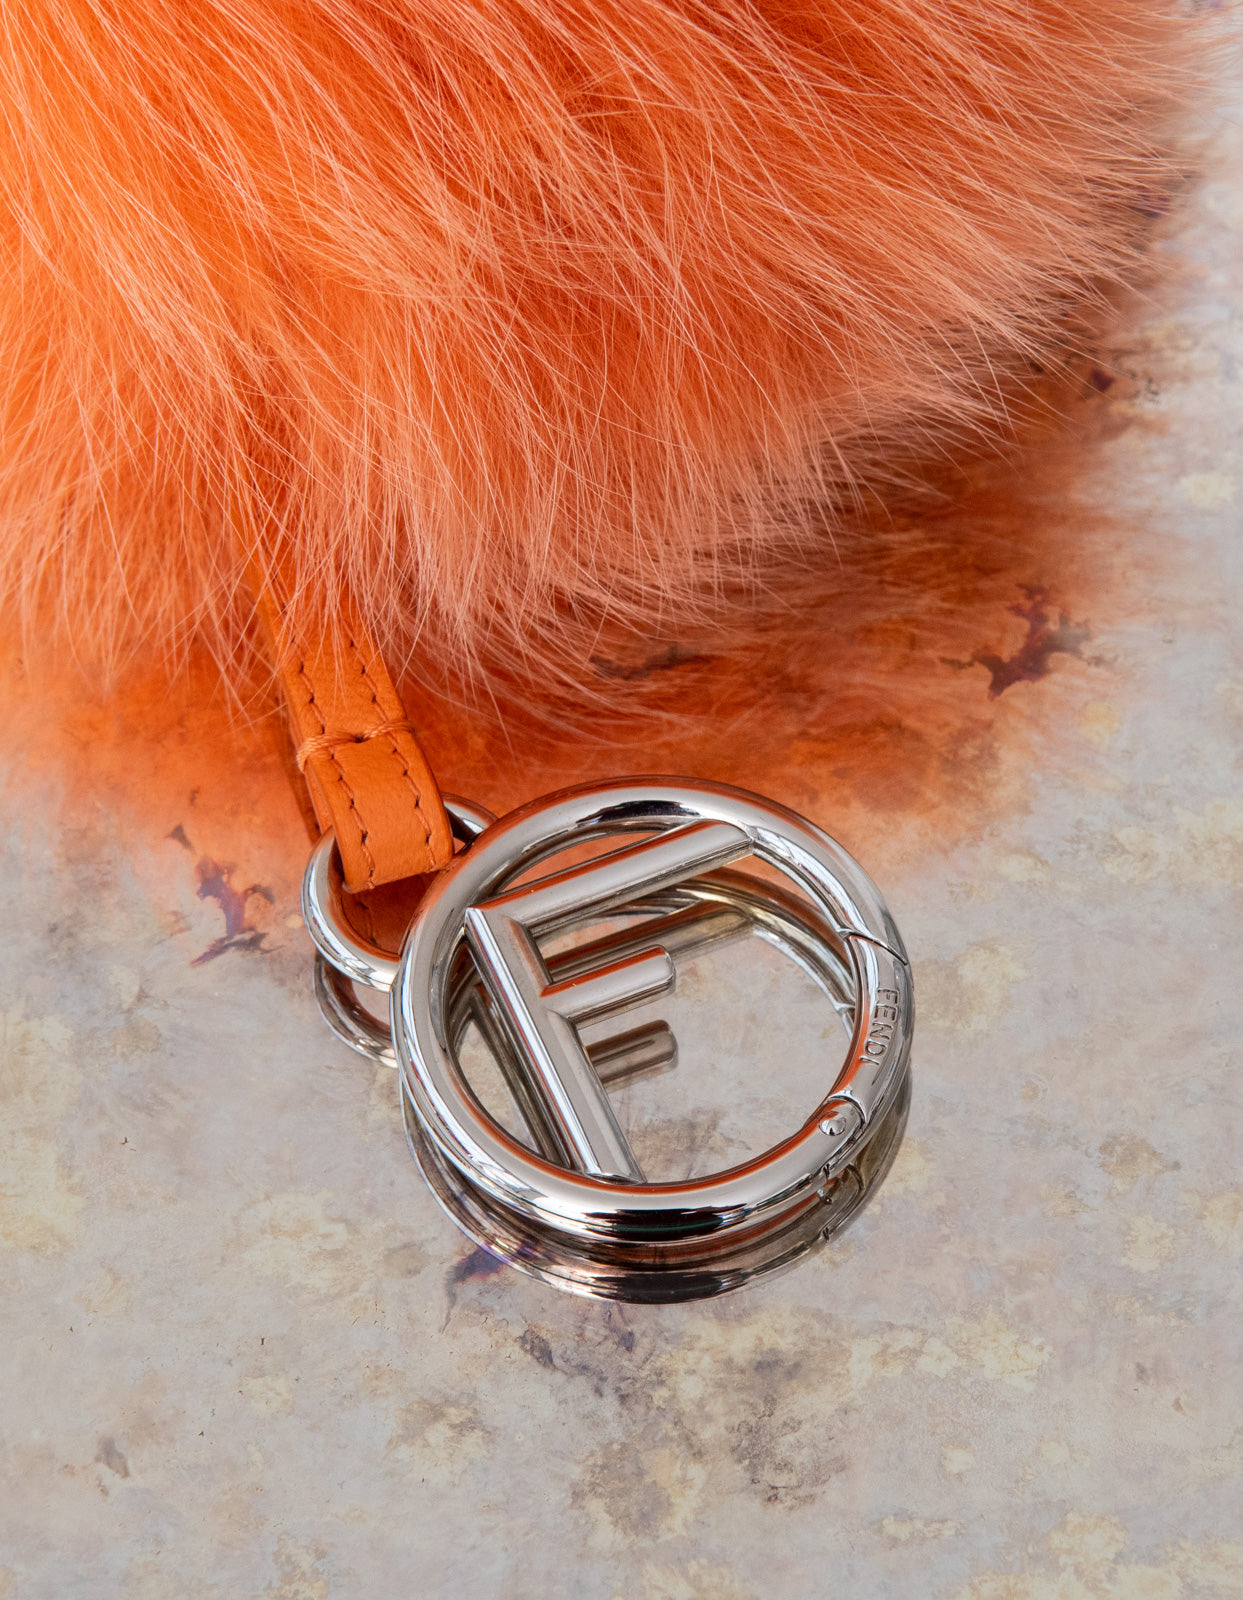 Fendi Orange Fur Pom Pom Key Ring - EVEYSPRELOVED